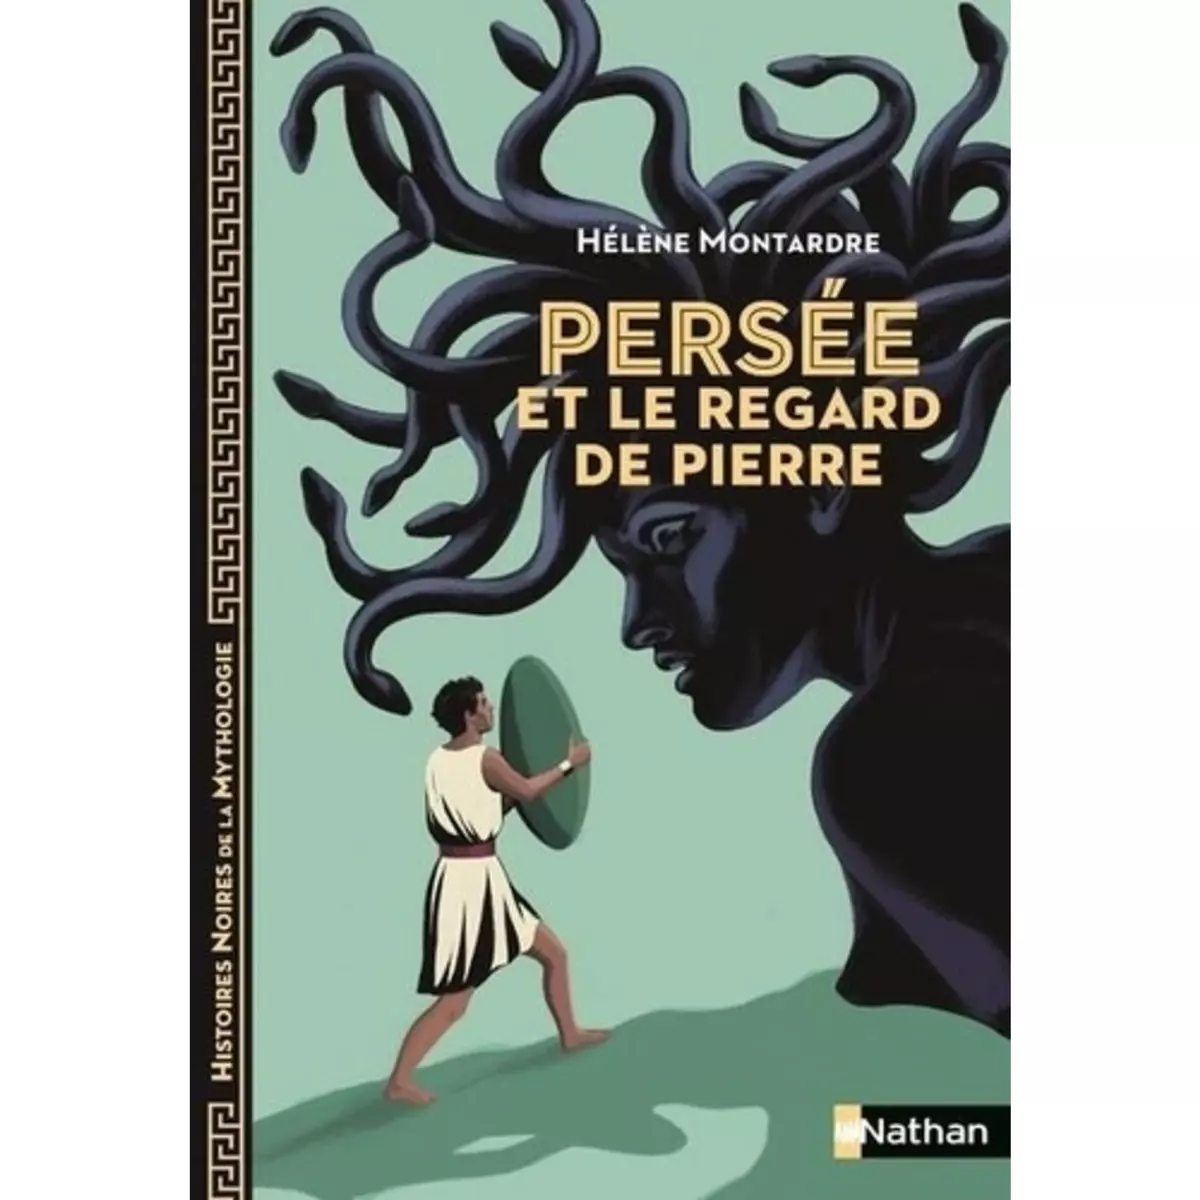  PERSEE ET LE REGARD DE PIERRE, Montardre Hélène